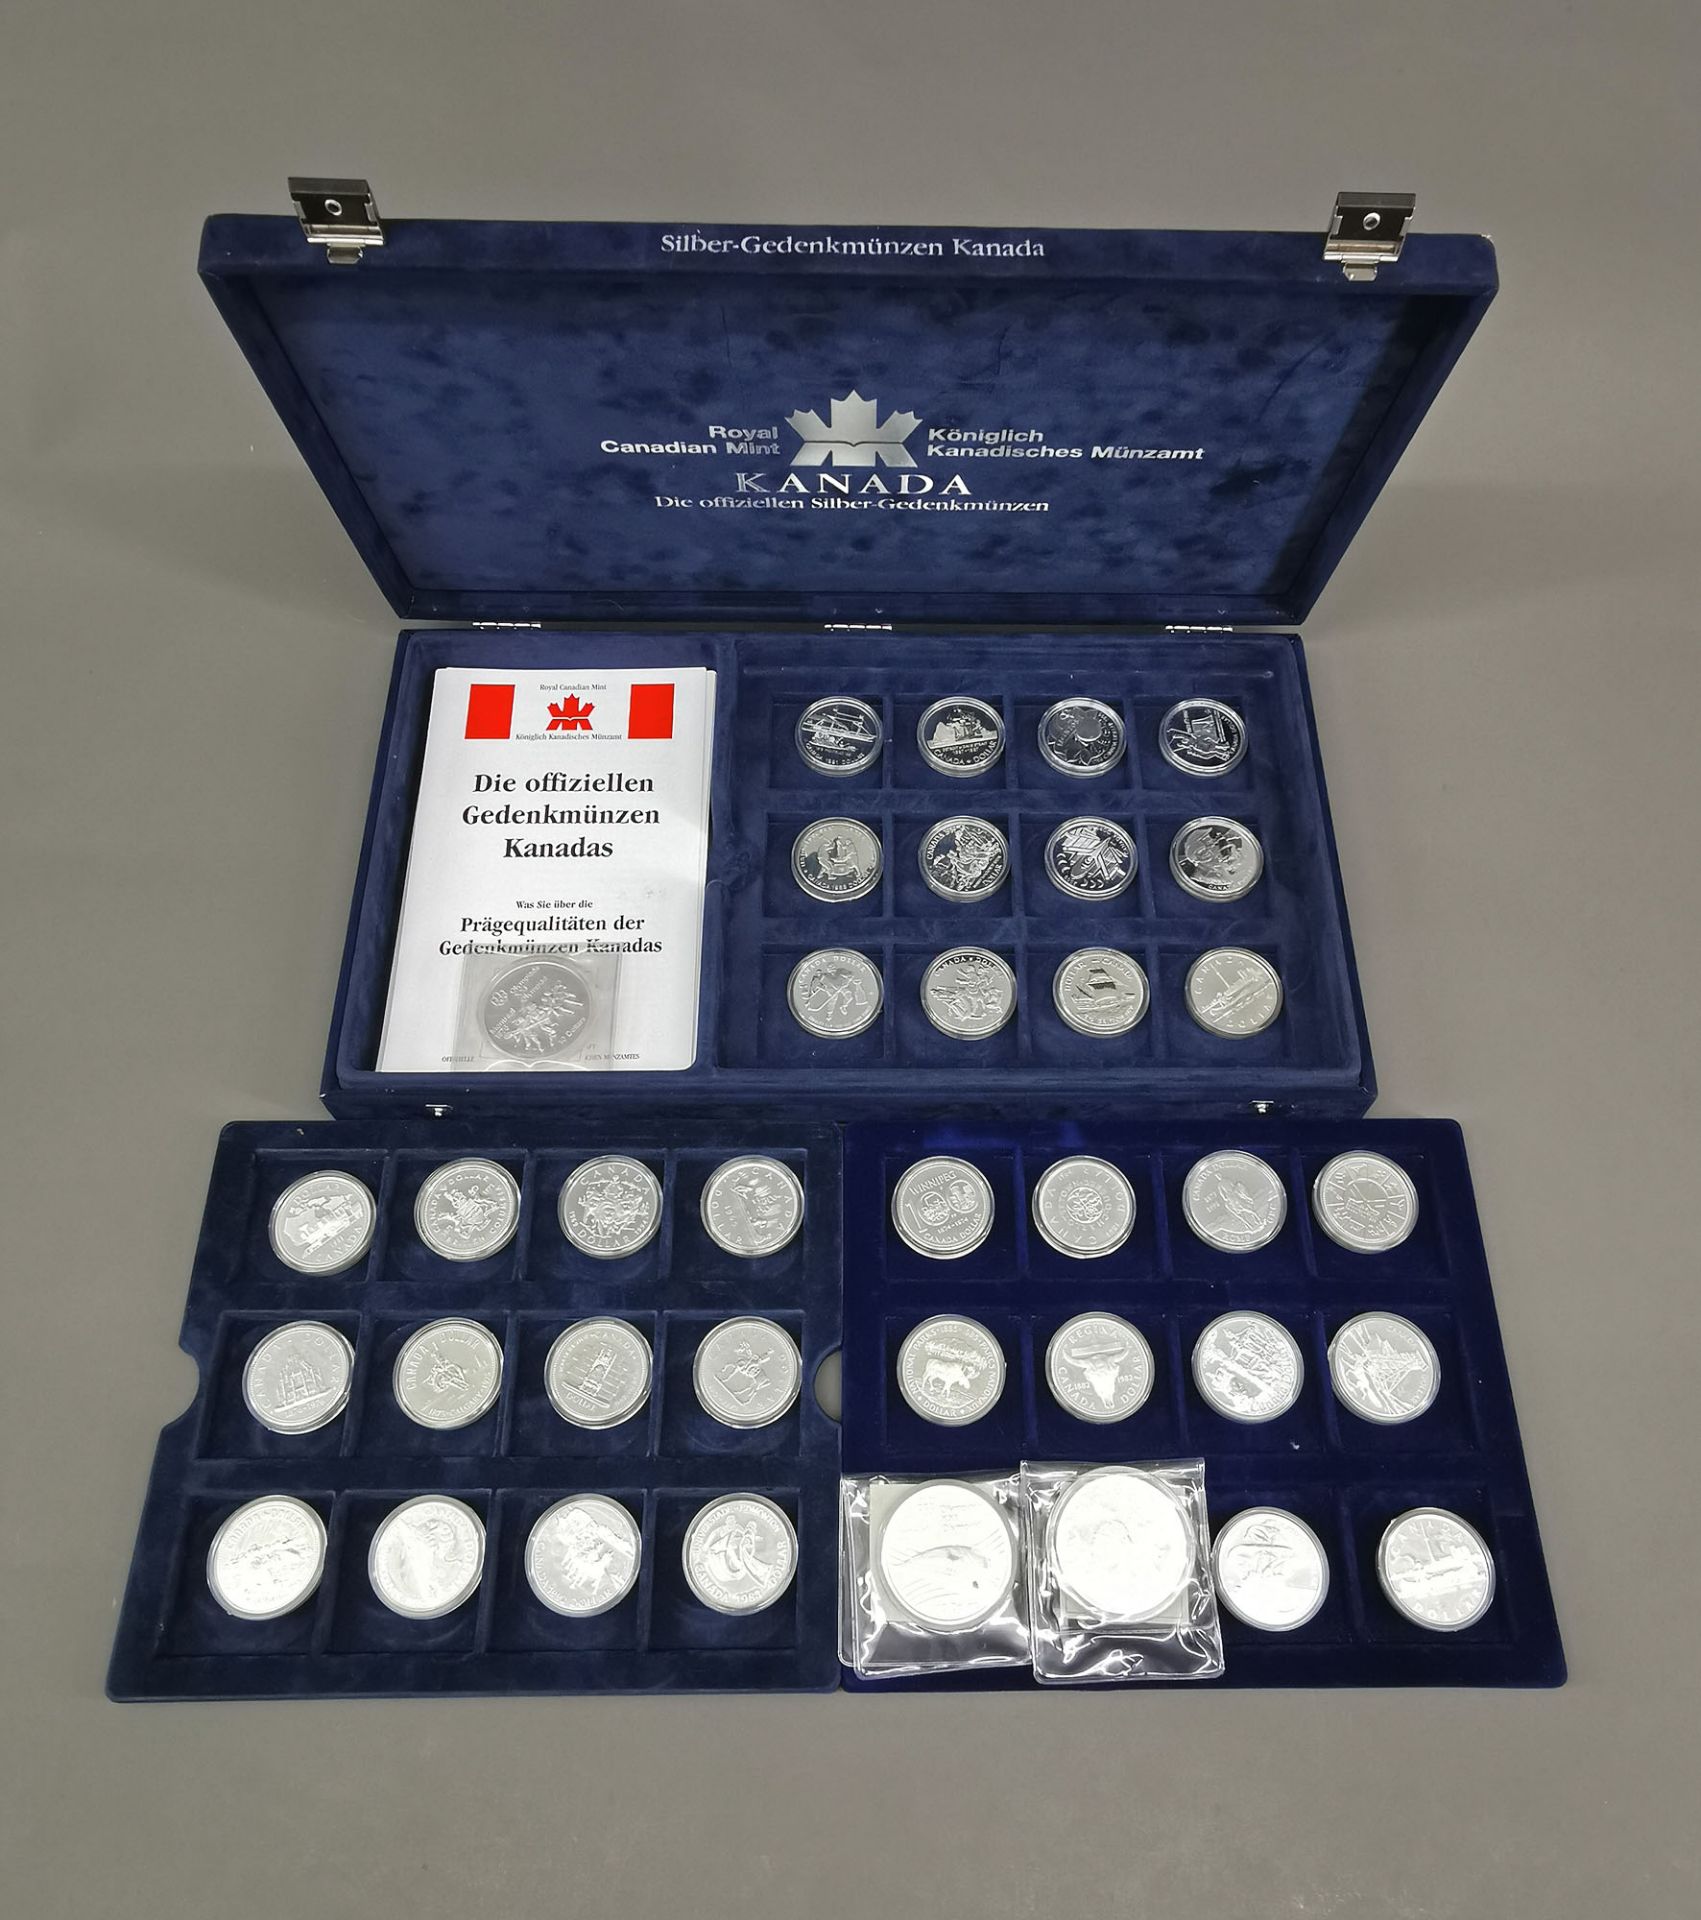 Sammlung Silber - Gedenkmünzen Kanada - Image 4 of 6